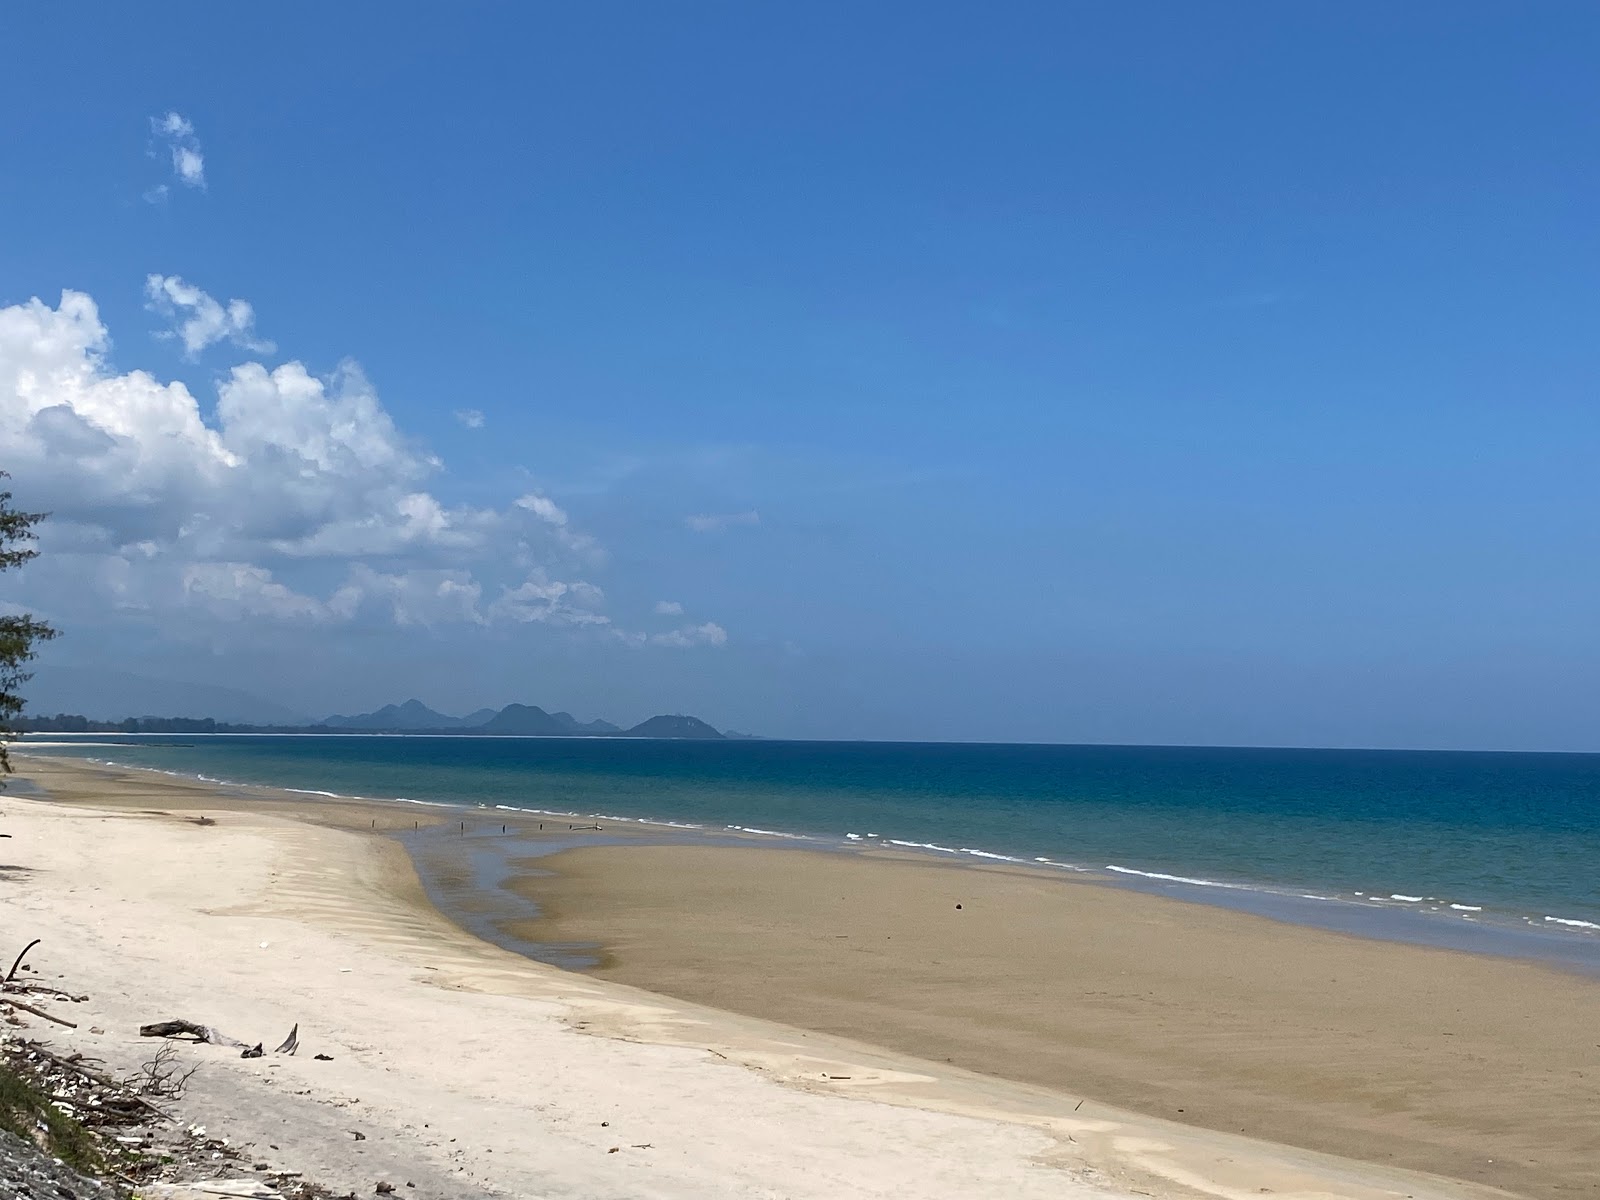 Foto de Don Samran Beach - lugar popular entre los conocedores del relax